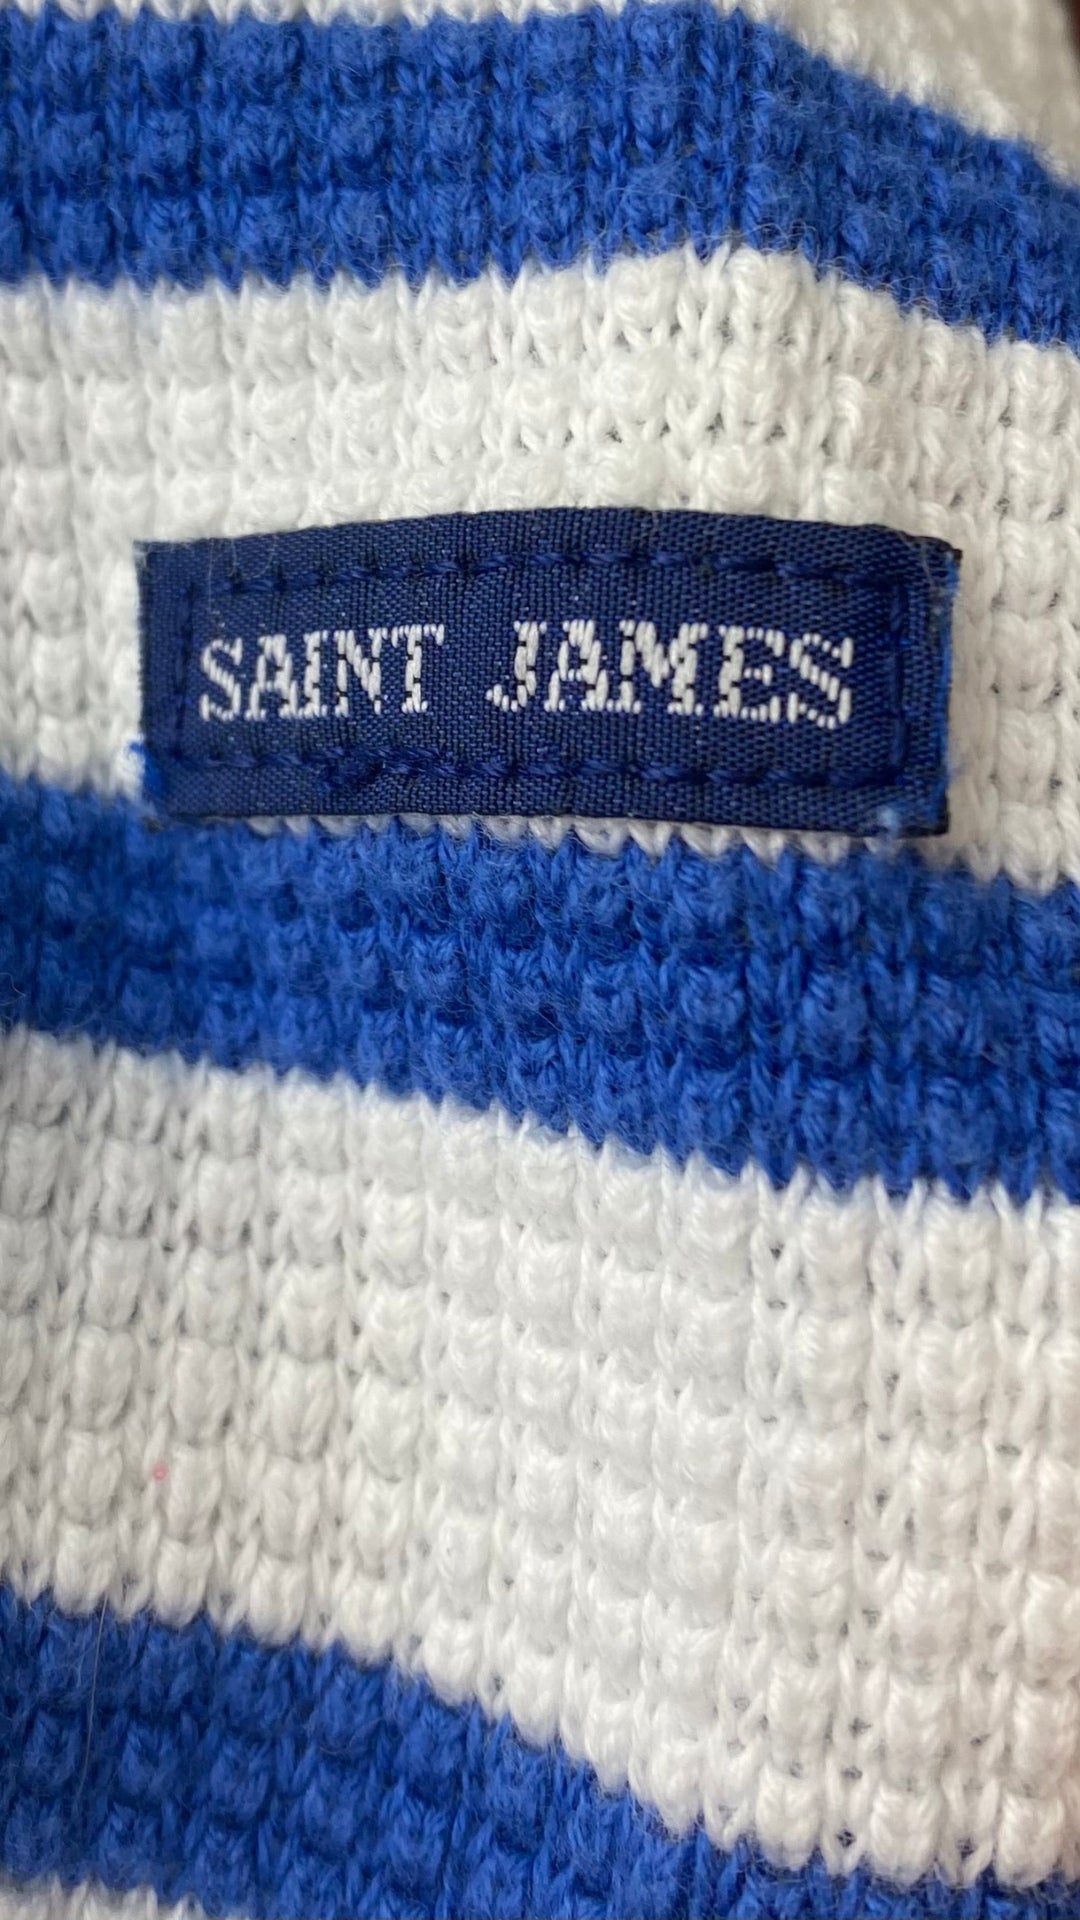 Chandail marinière en tricot de coton à rayures bleues Saint James, taille 6 (small). Vue du détail sur la manche.